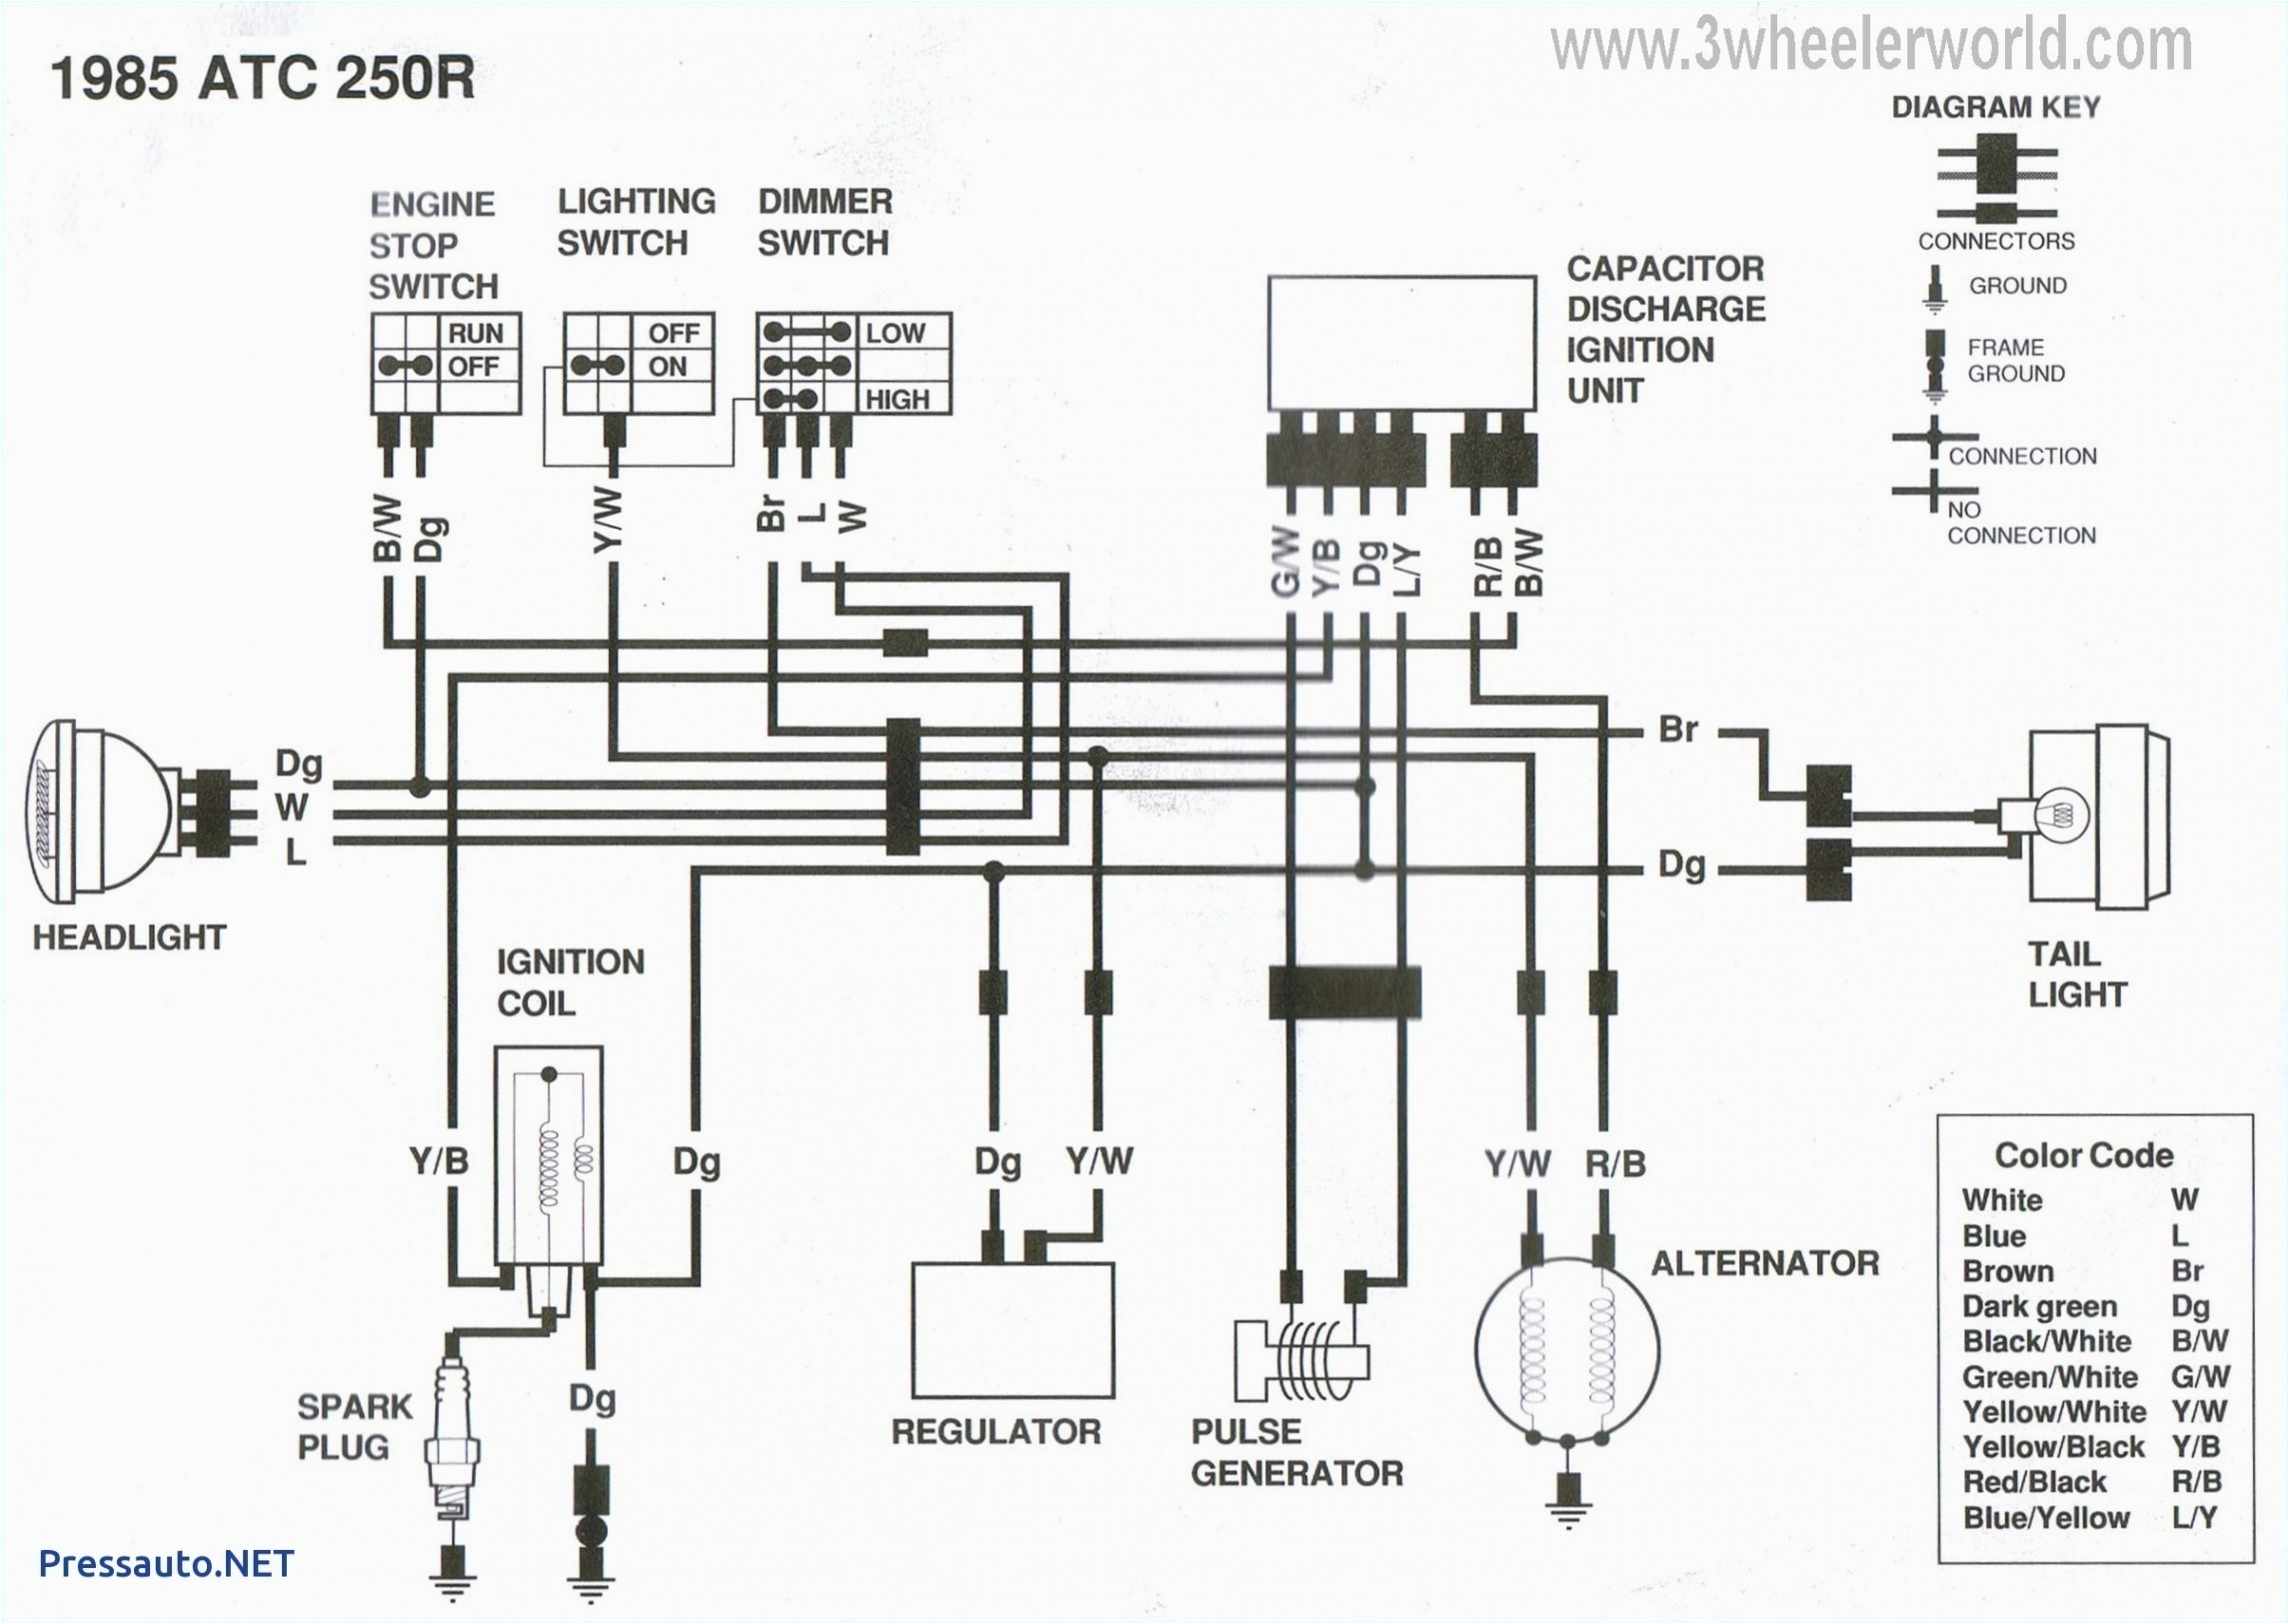 honda 250r wiring diagram wiring diagrams 2003 honda trx 250 wiring diagram honda 250r wiring diagram